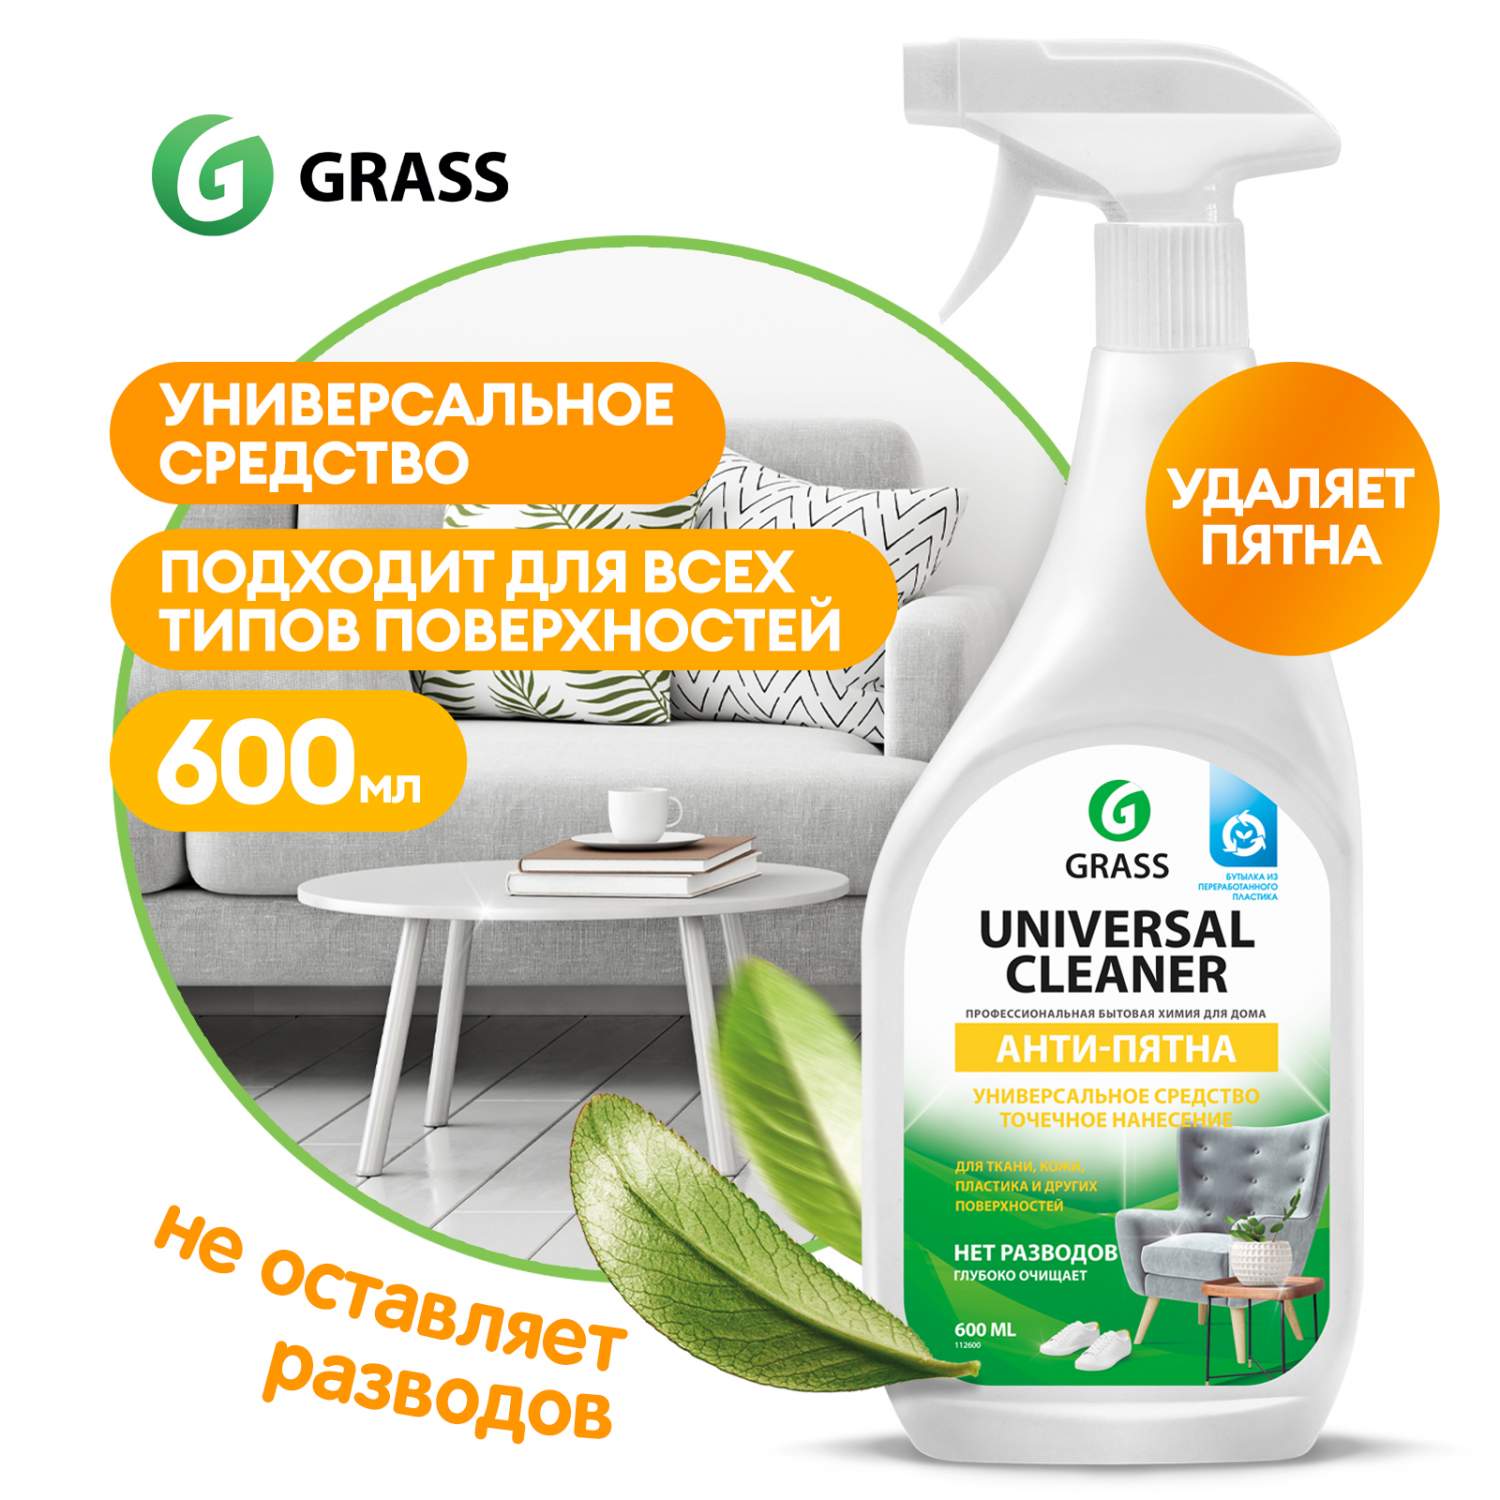 Универсальное чистящее средство GRASS Universal Cleaner 600мл для мягкоймебели, ковров - отзывы покупателей на Мегамаркет